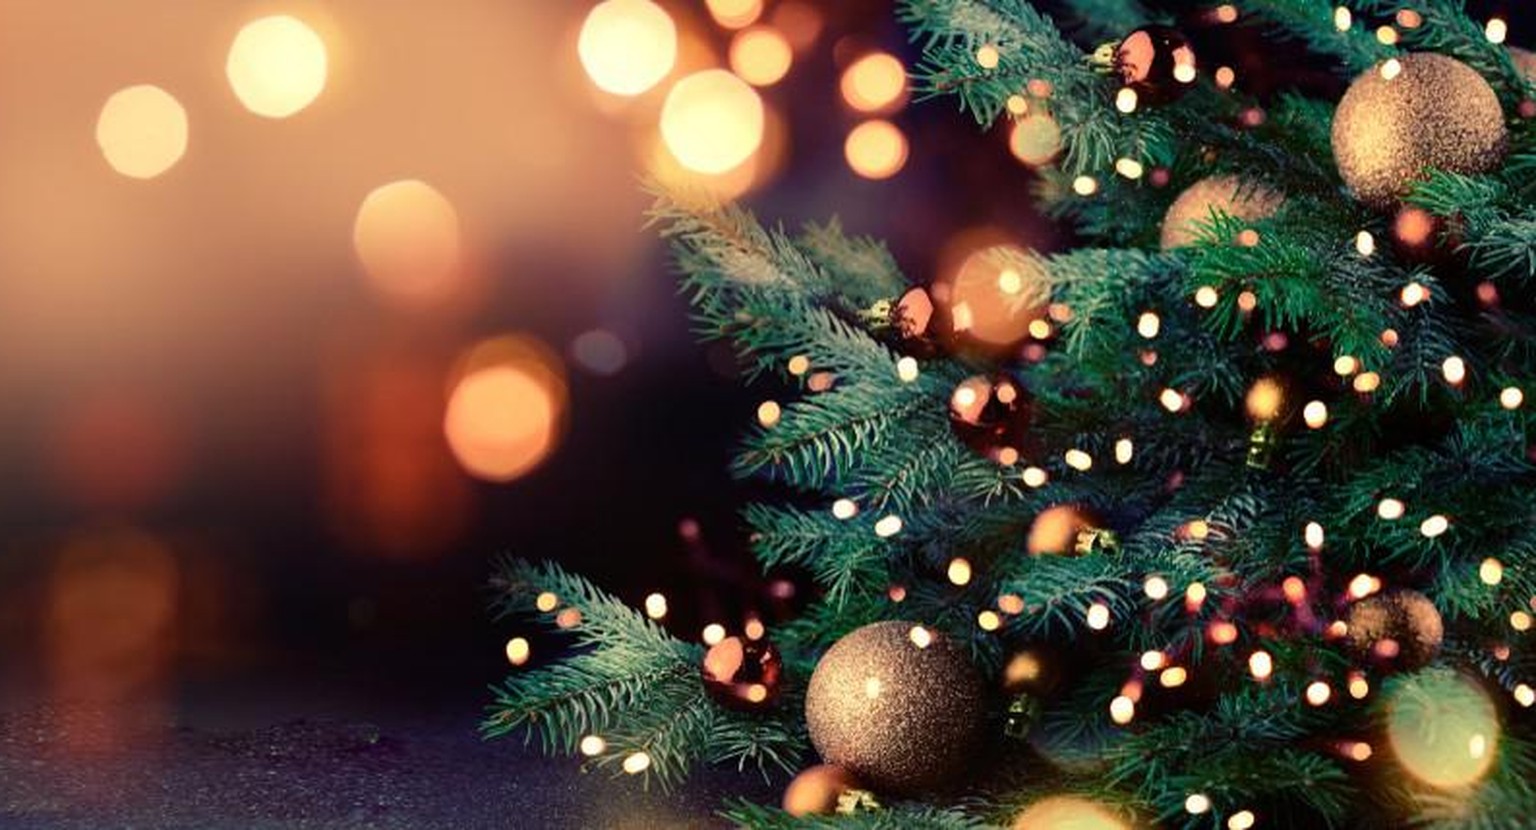 Der lichtergeschmückte Weihnachtsbaum ist nicht so alt, wie man das oft annimmt.  